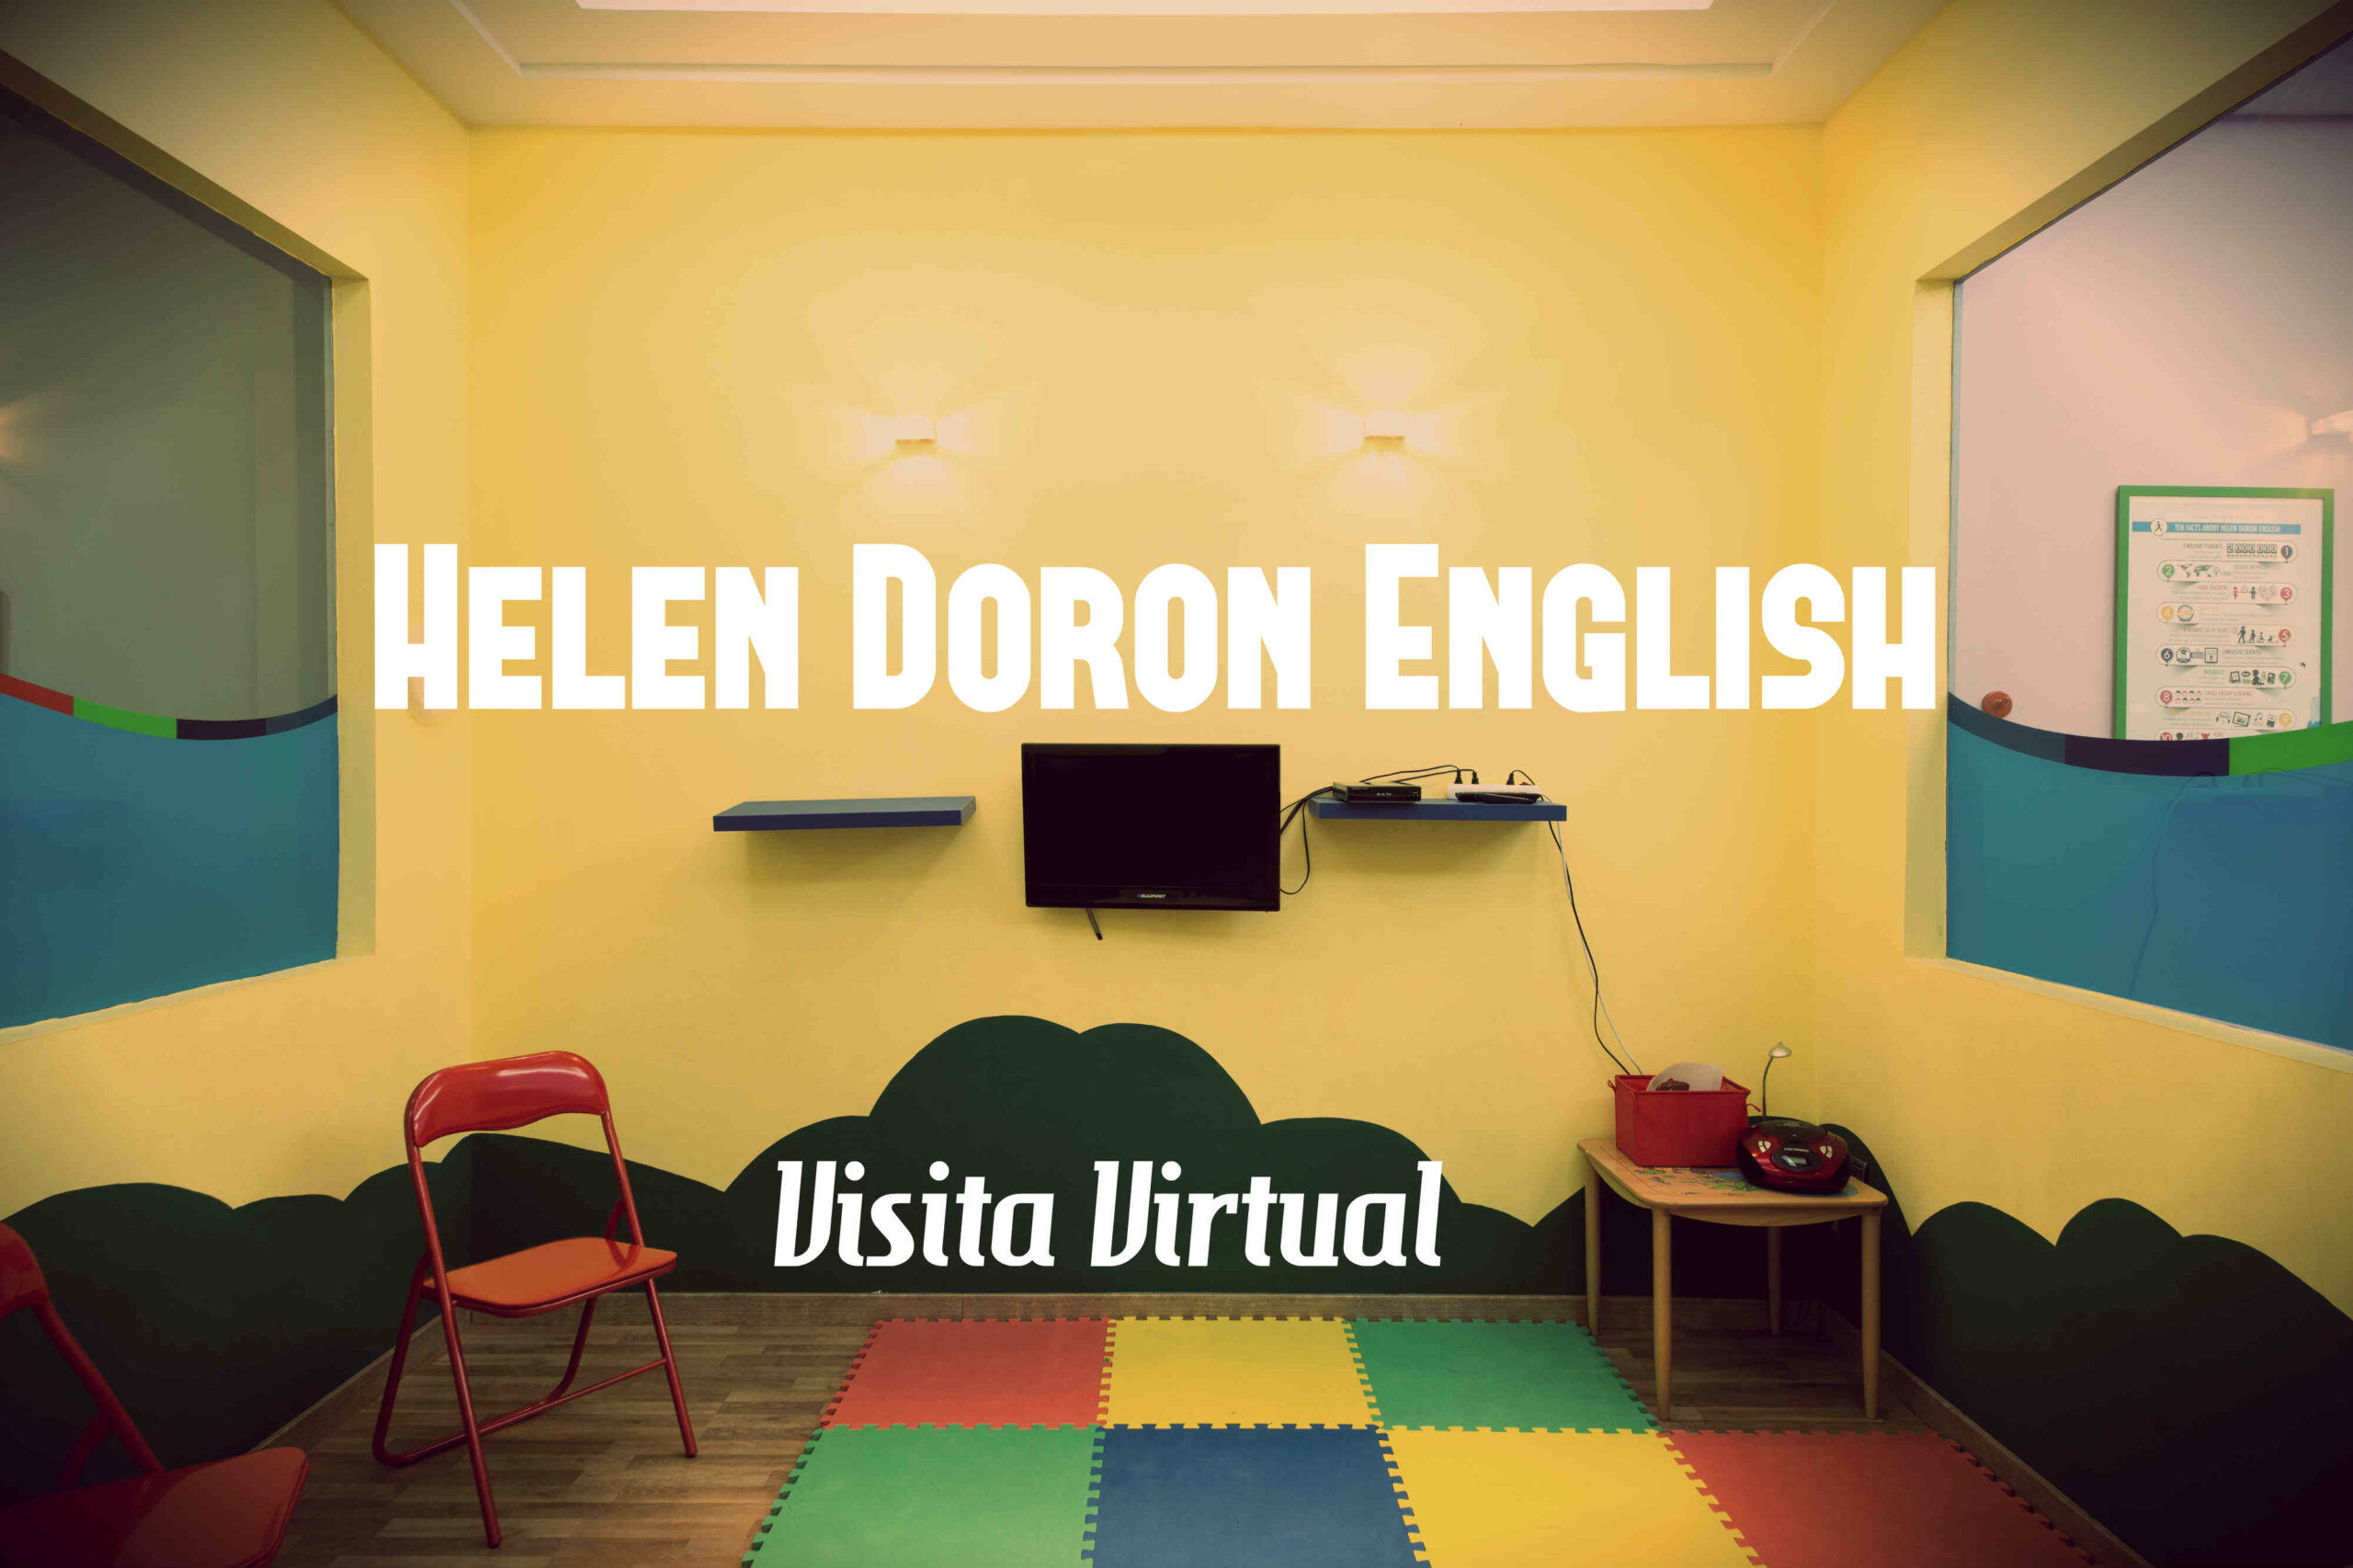 Visita Virtual Google Street View Helen Doron - DestacaTuNegocio